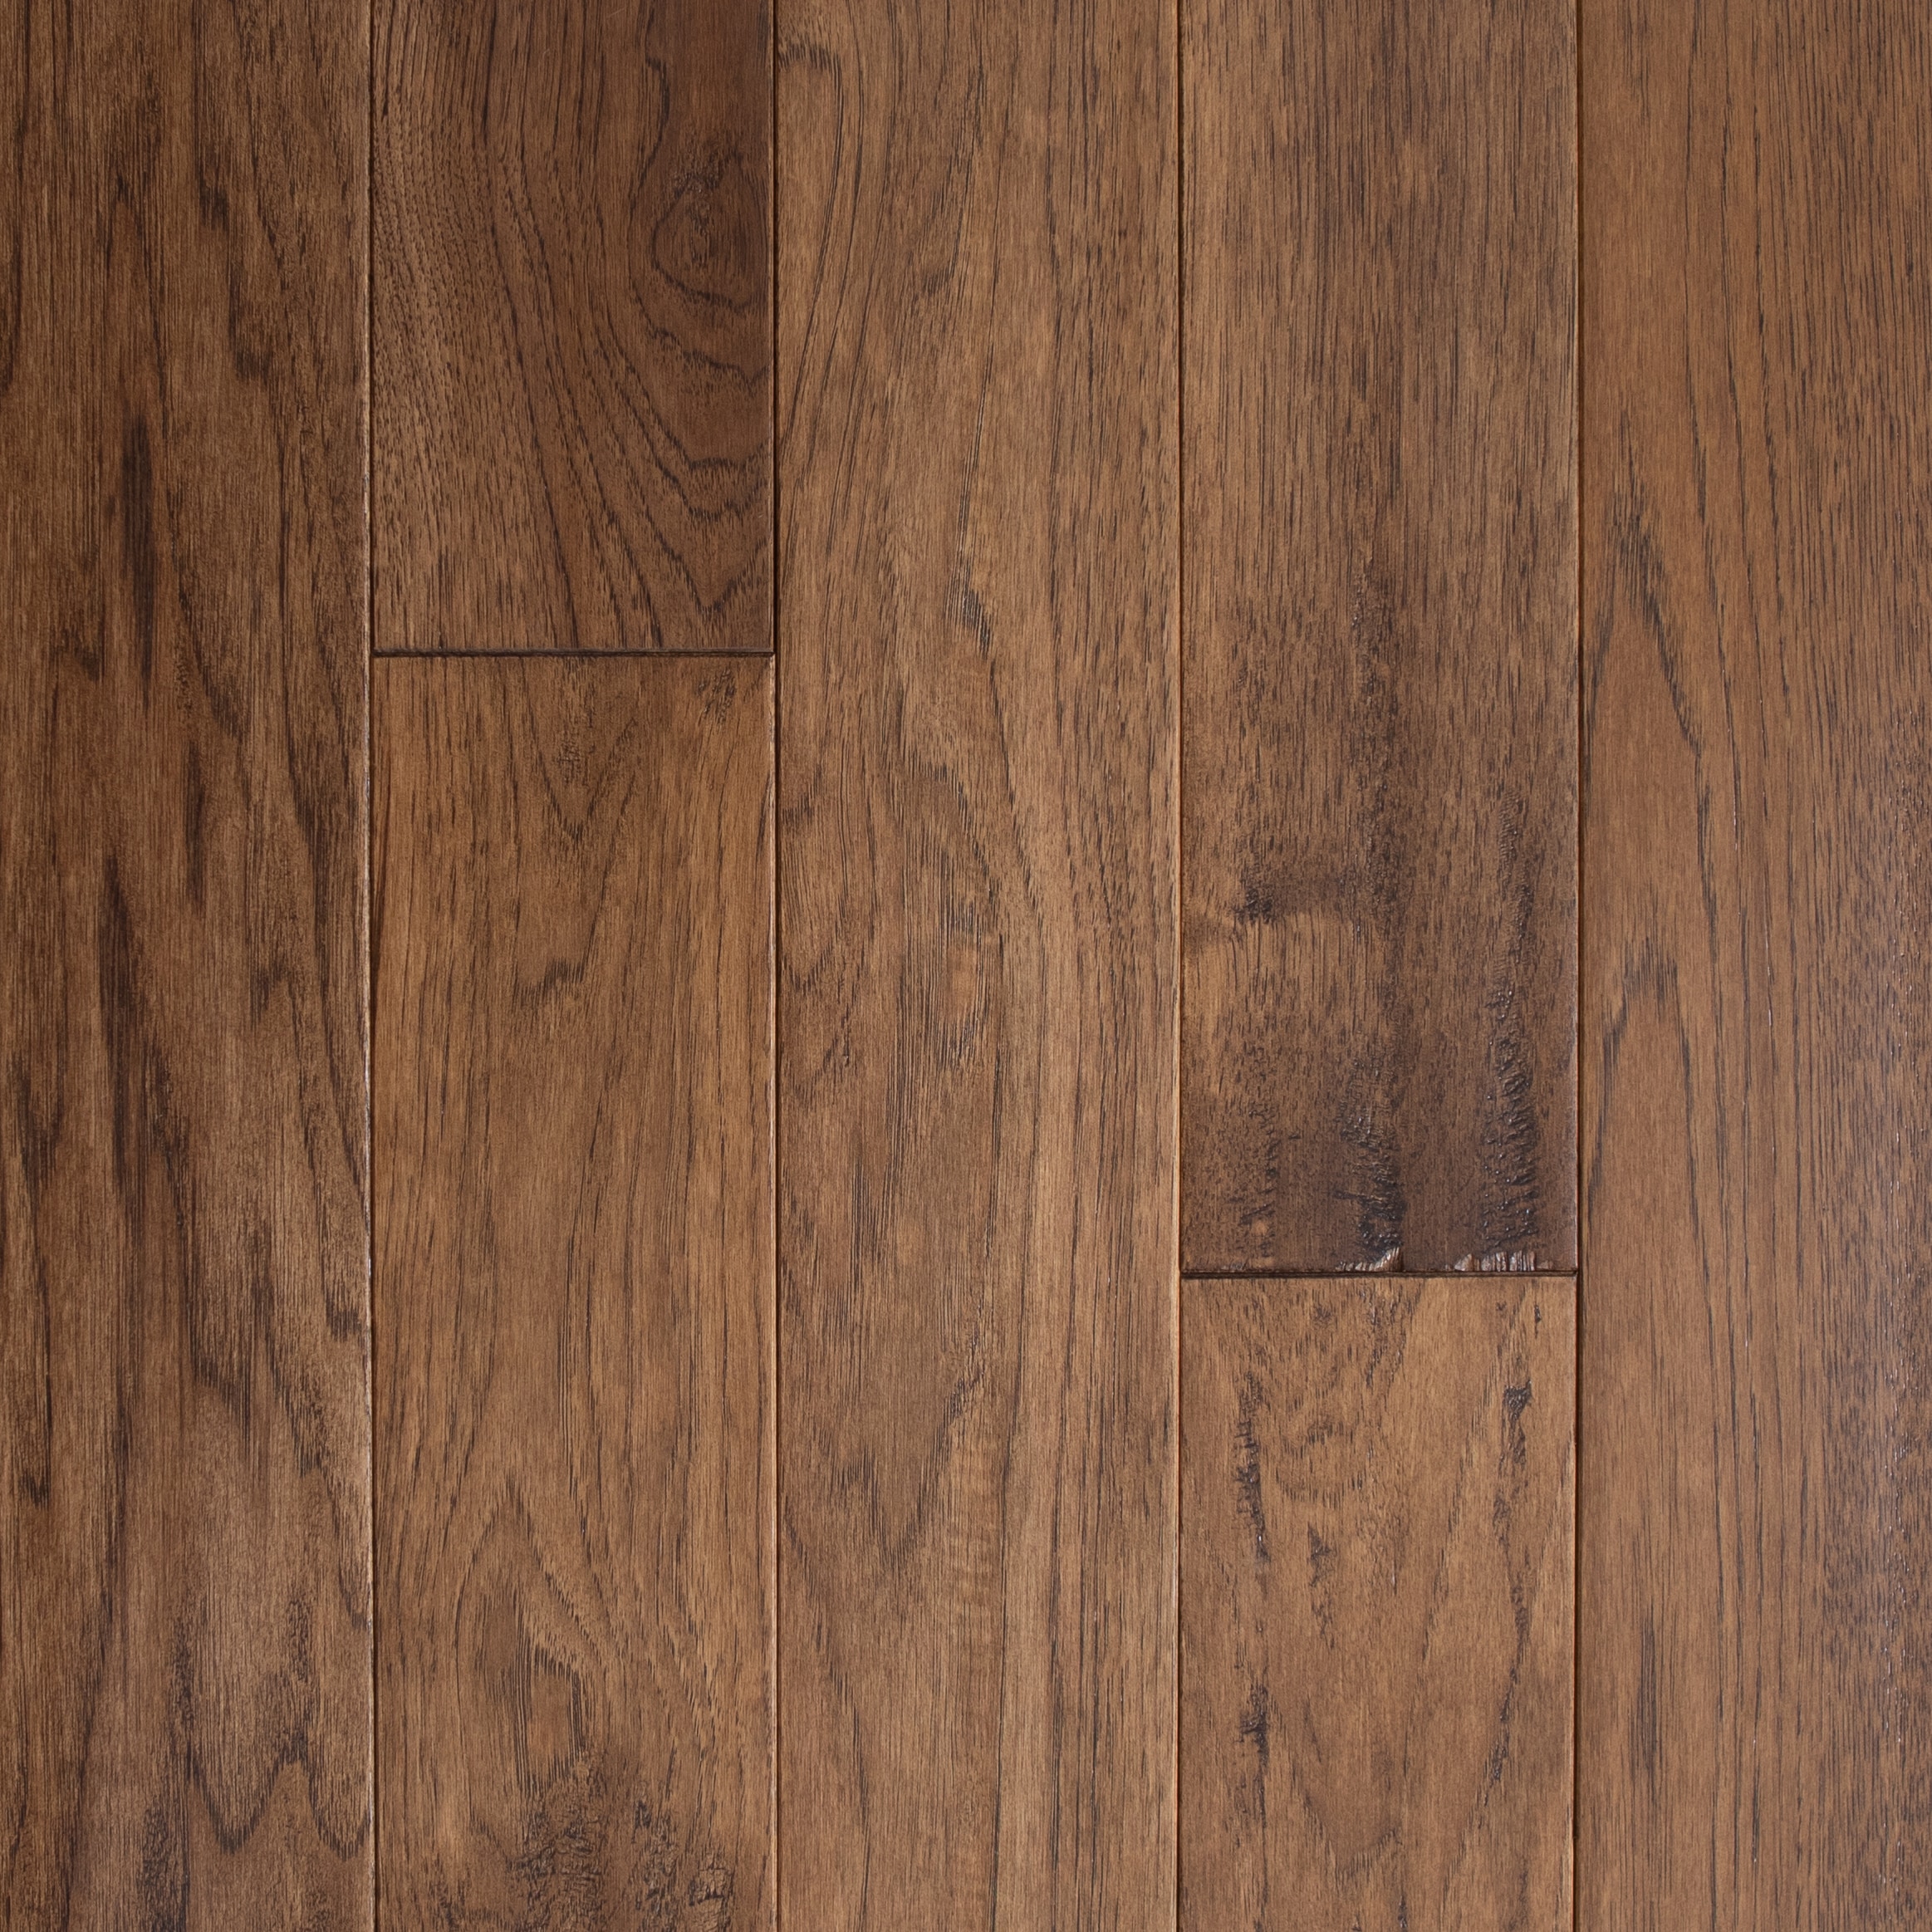 Solid Hardwood Flooring, 3 4 X 5 Hardwood Flooring